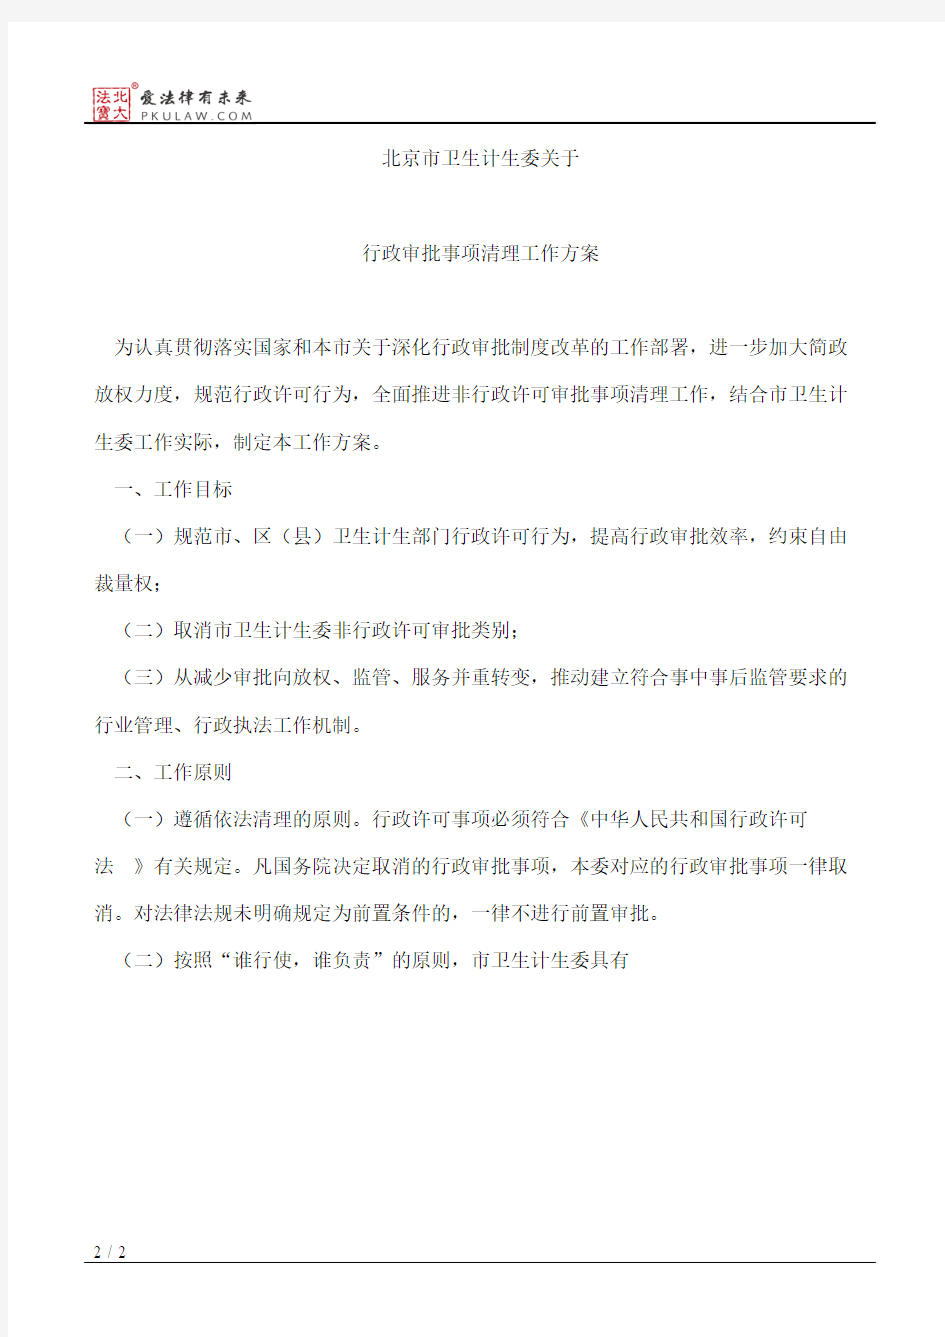 北京市卫生计生委关于印发《北京市卫生和计划生育委员会行政审批